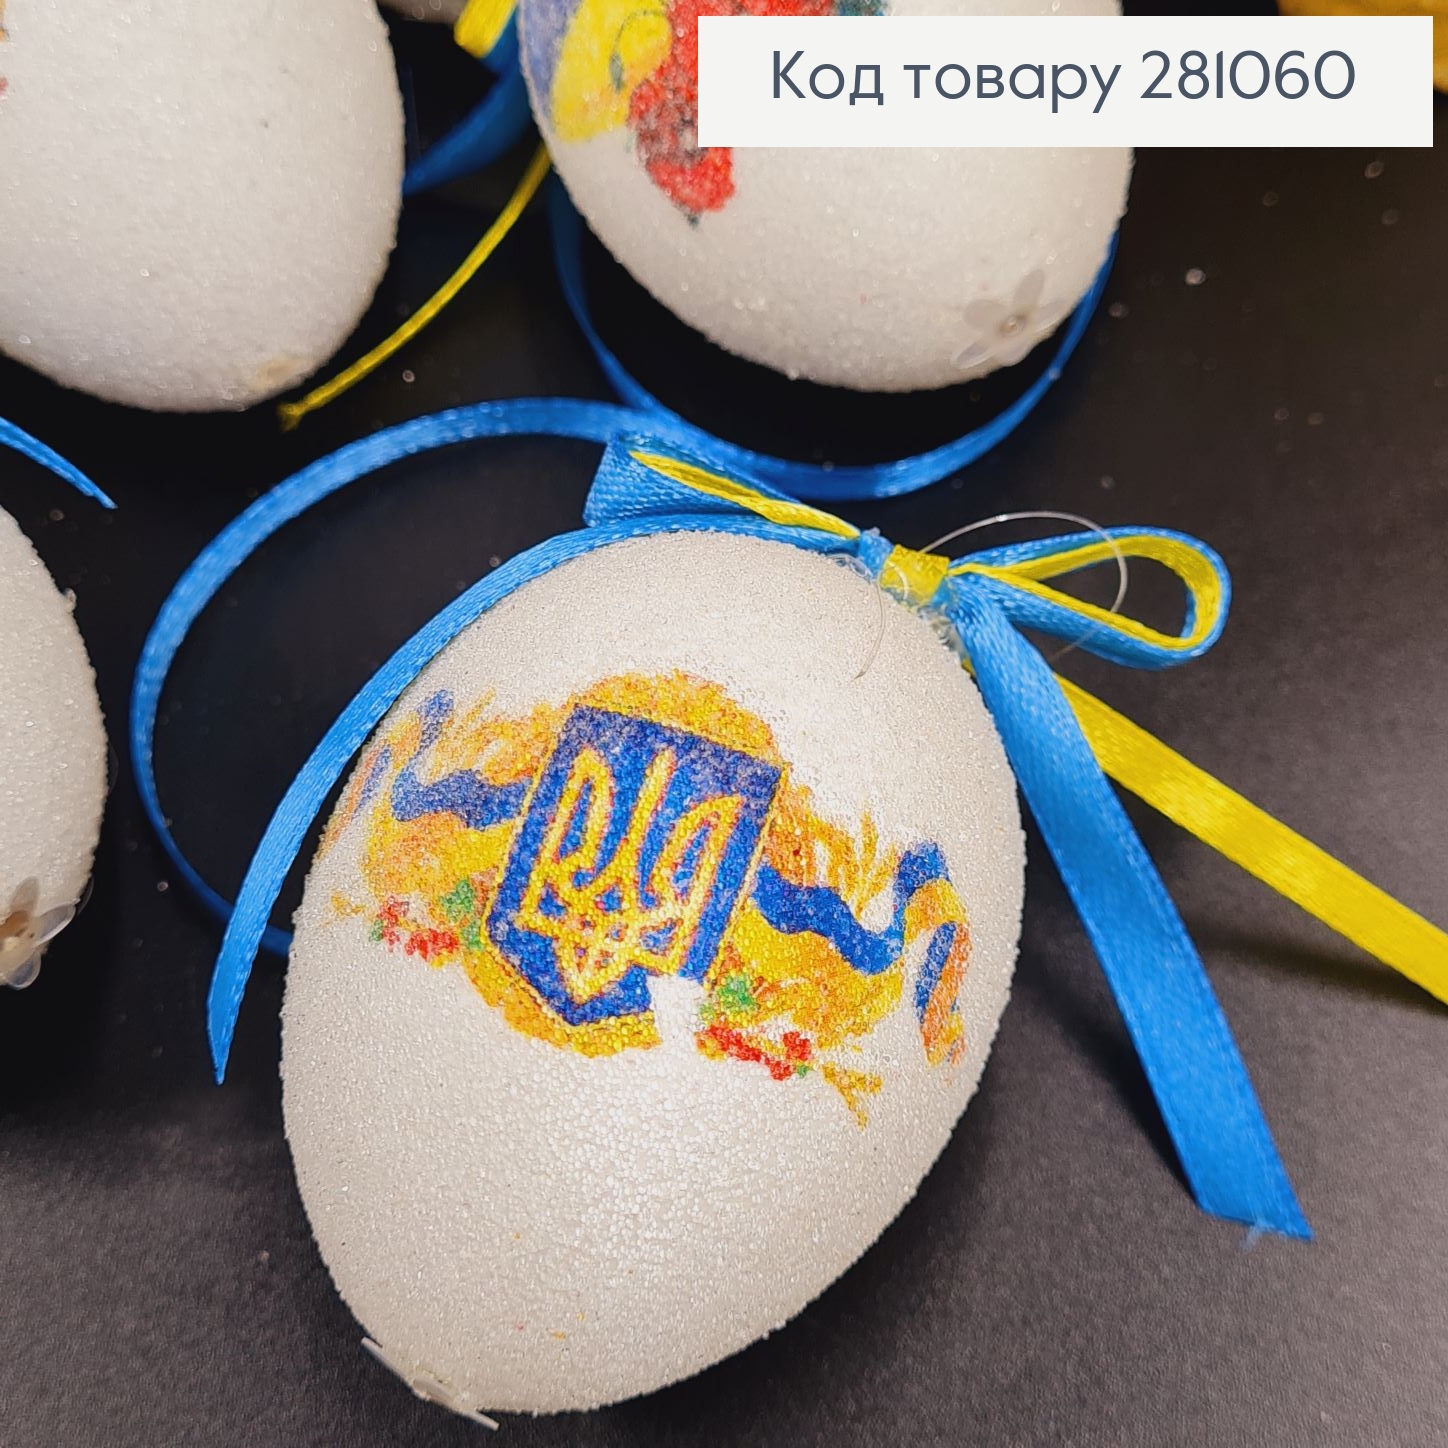 Яйца средние белые с Украинской символикой петля, посыпка, 6*4см, 6шт/уп 281060 фото 2